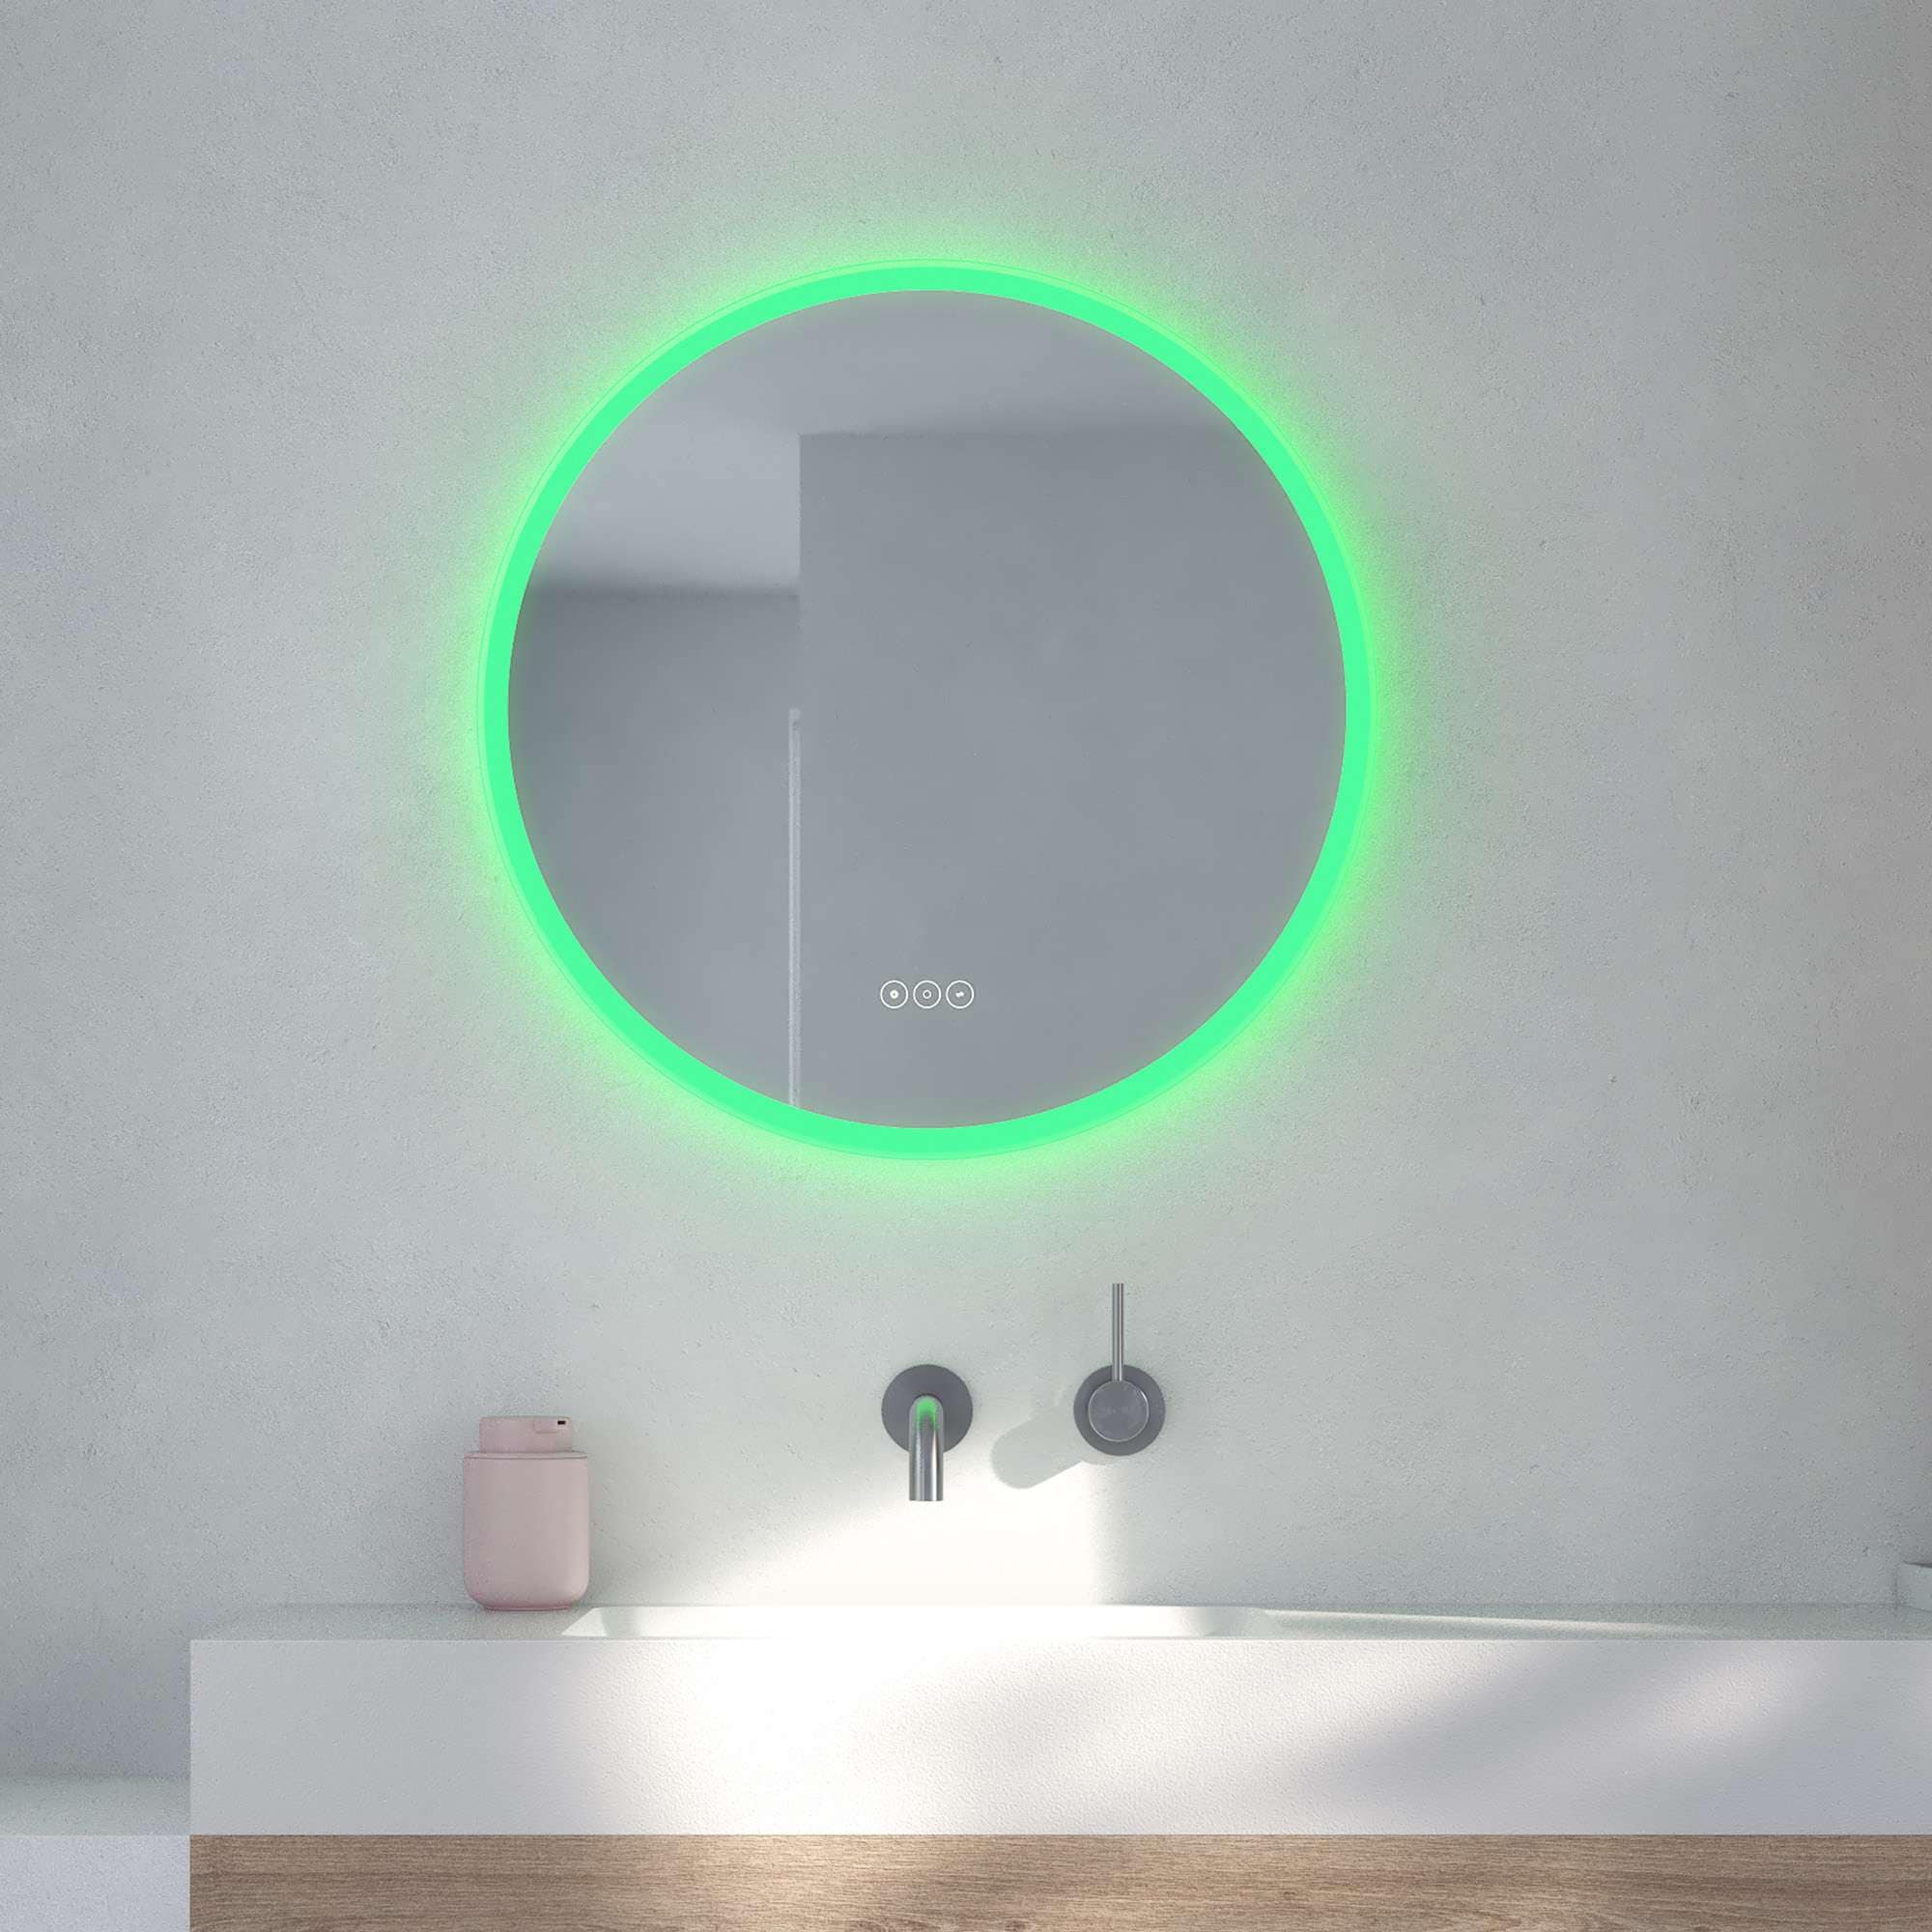 Loevschall Badspiegel »Johannesburg RGB Badezimmerspiegel, rund, Farbwechsel, dimmbar«, mit MultiWhite® und RGB-Licht, Touchpanel für Lichtsteuerung